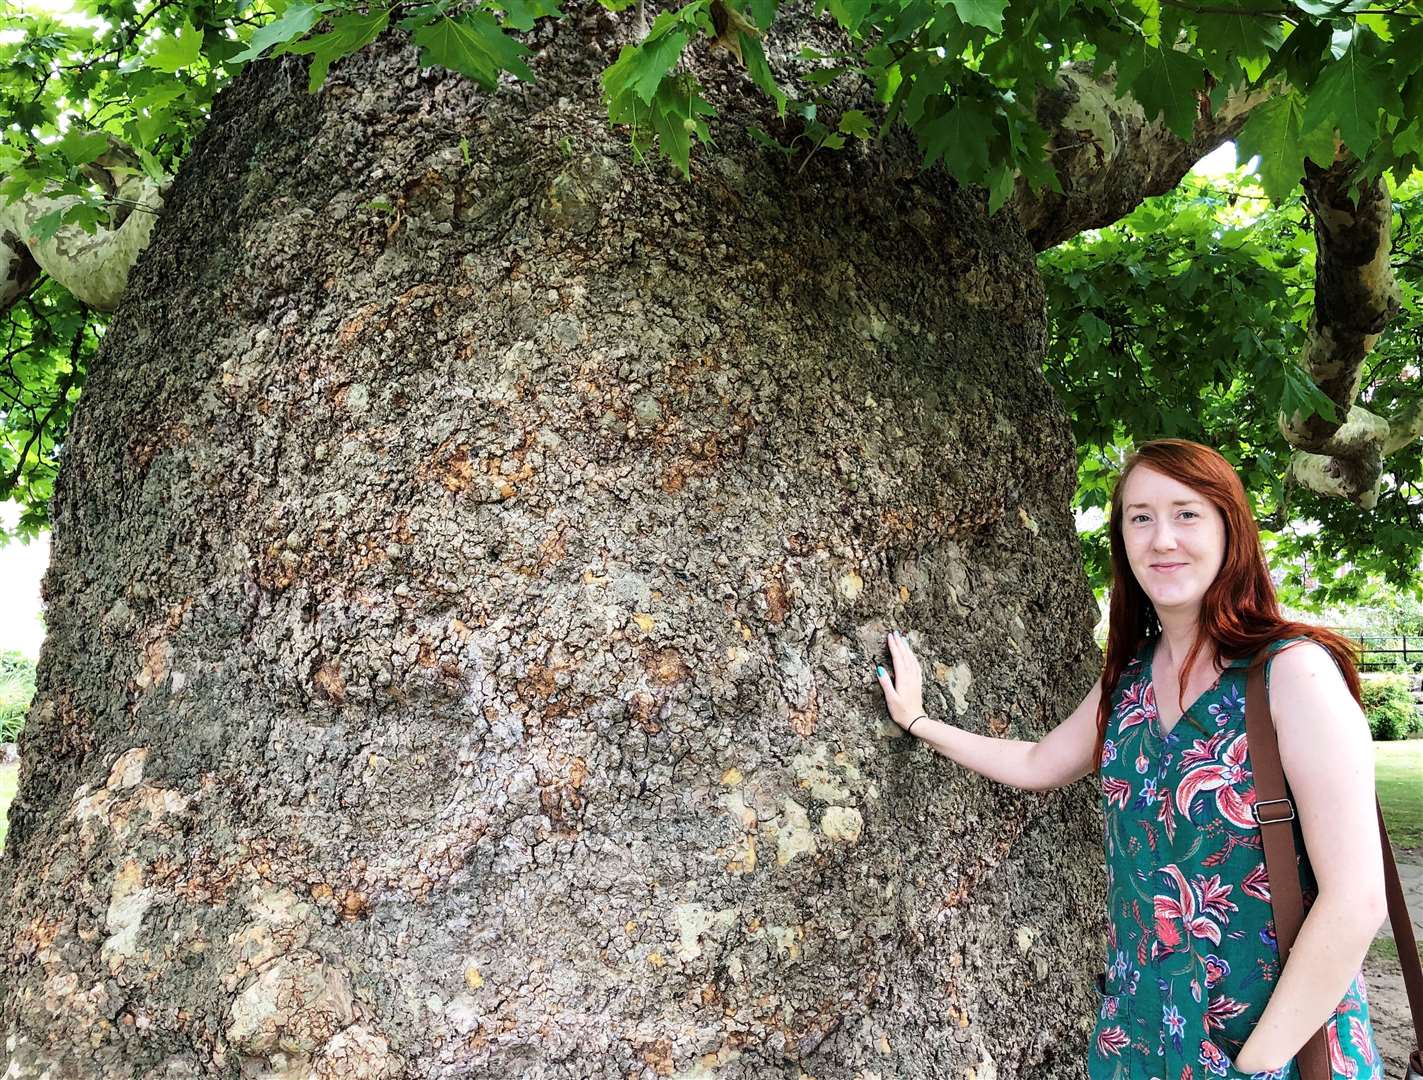 Sadie Palmer next to the Baobab in Westgate Gardens